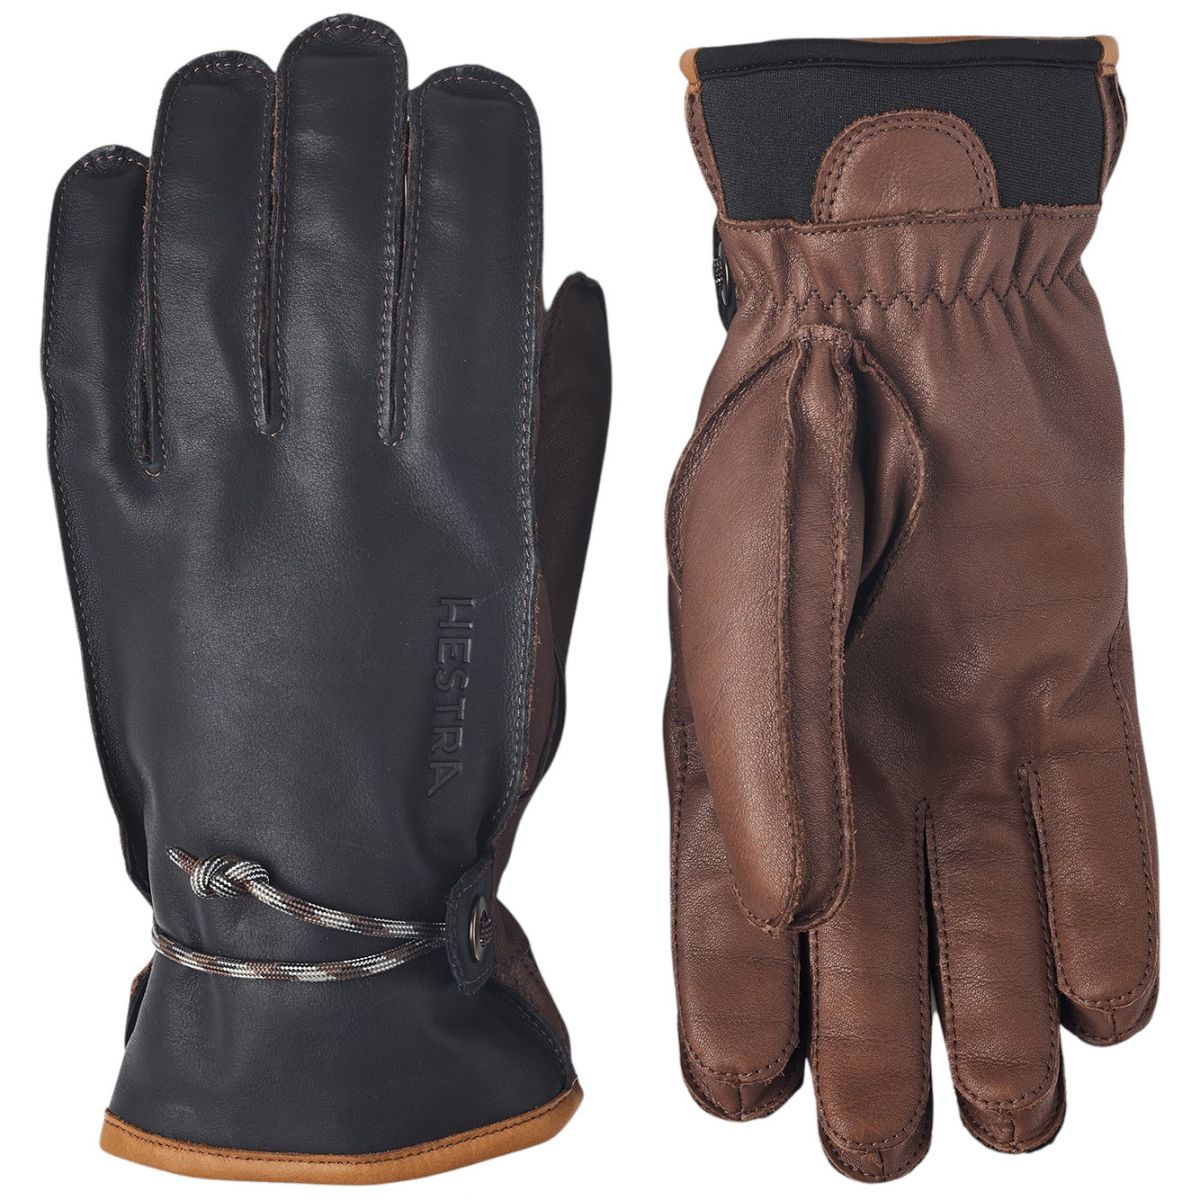 Brug Hestra Wakayama, handsker, navy/brun til en forbedret oplevelse